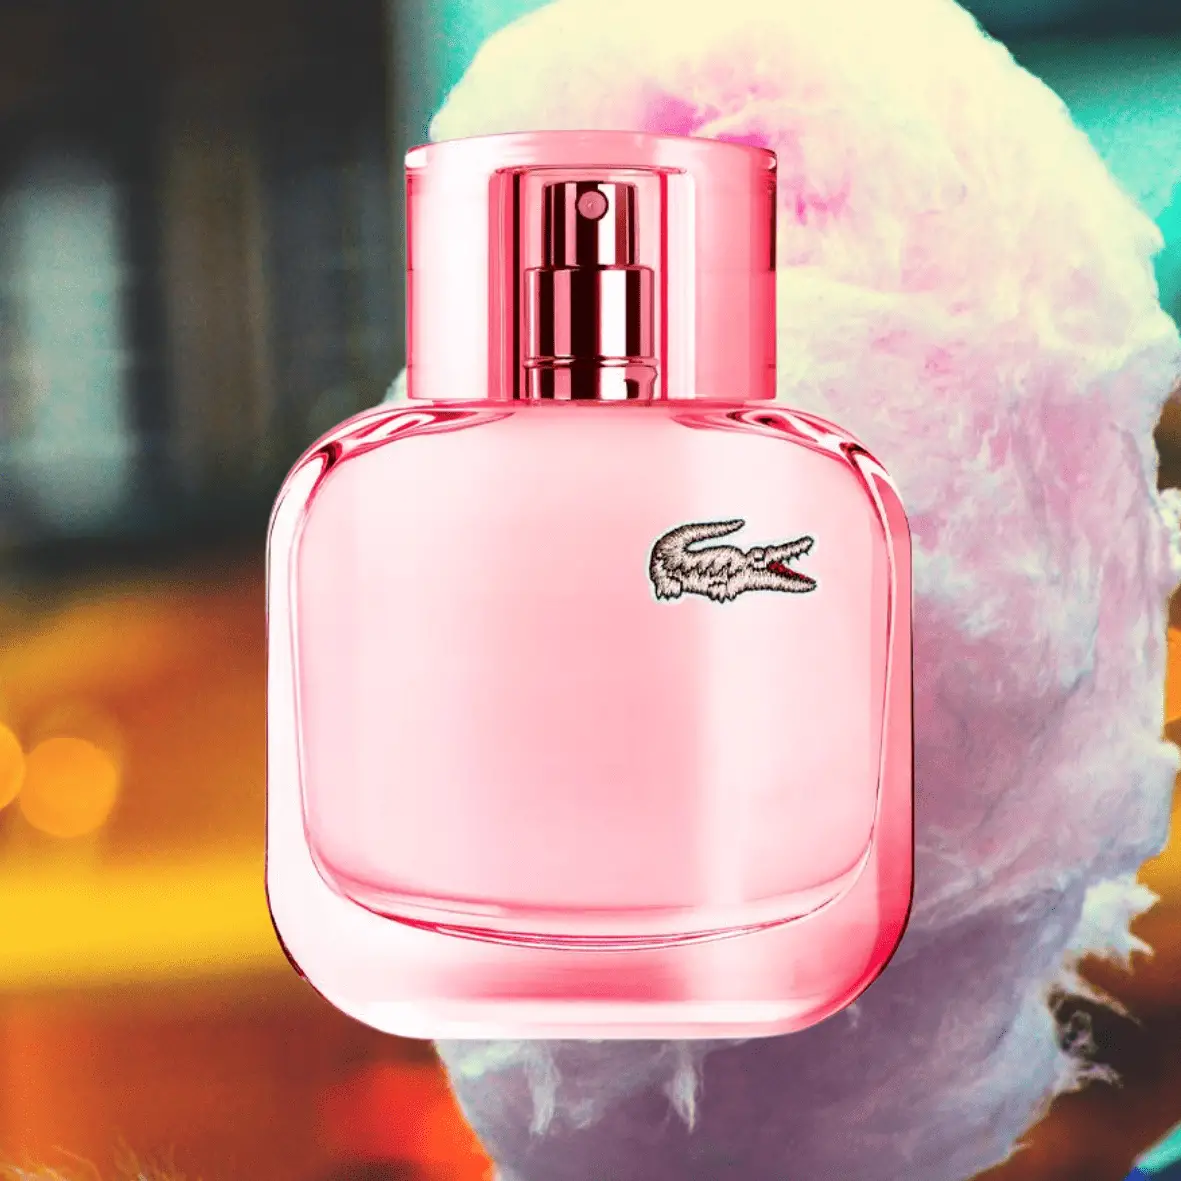 Lacoste Pour Elle Sparkling
Best Cotton Candy Perfumes